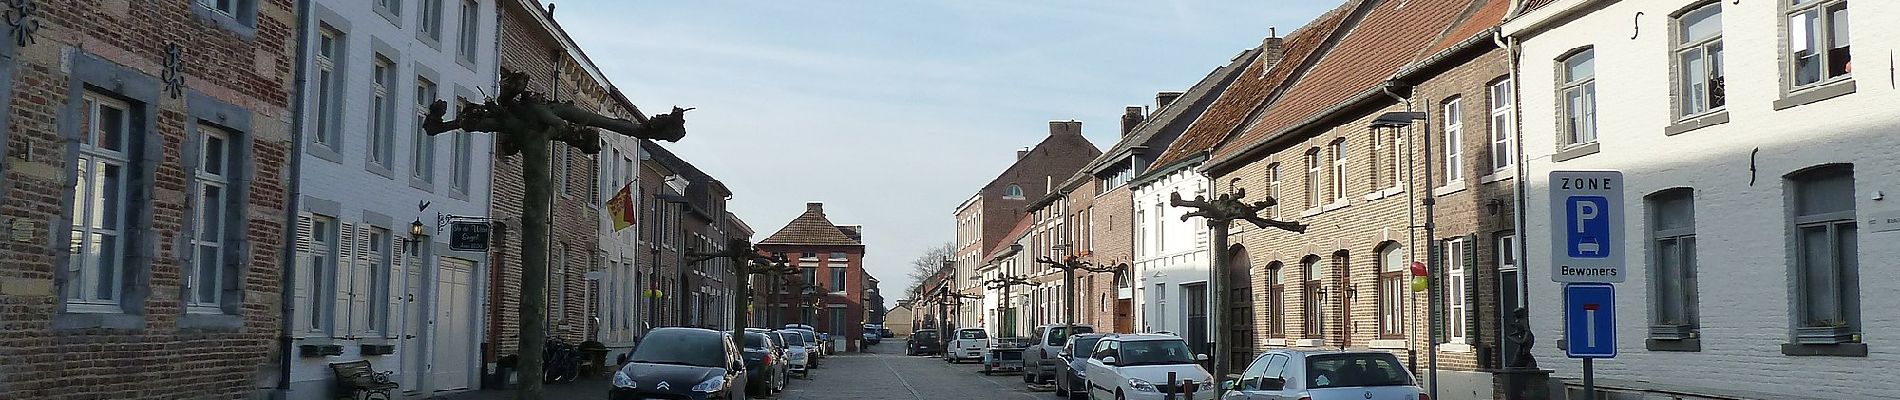 Percorso A piedi Lanaken - Oud-Rekem Rode driehoek - Photo